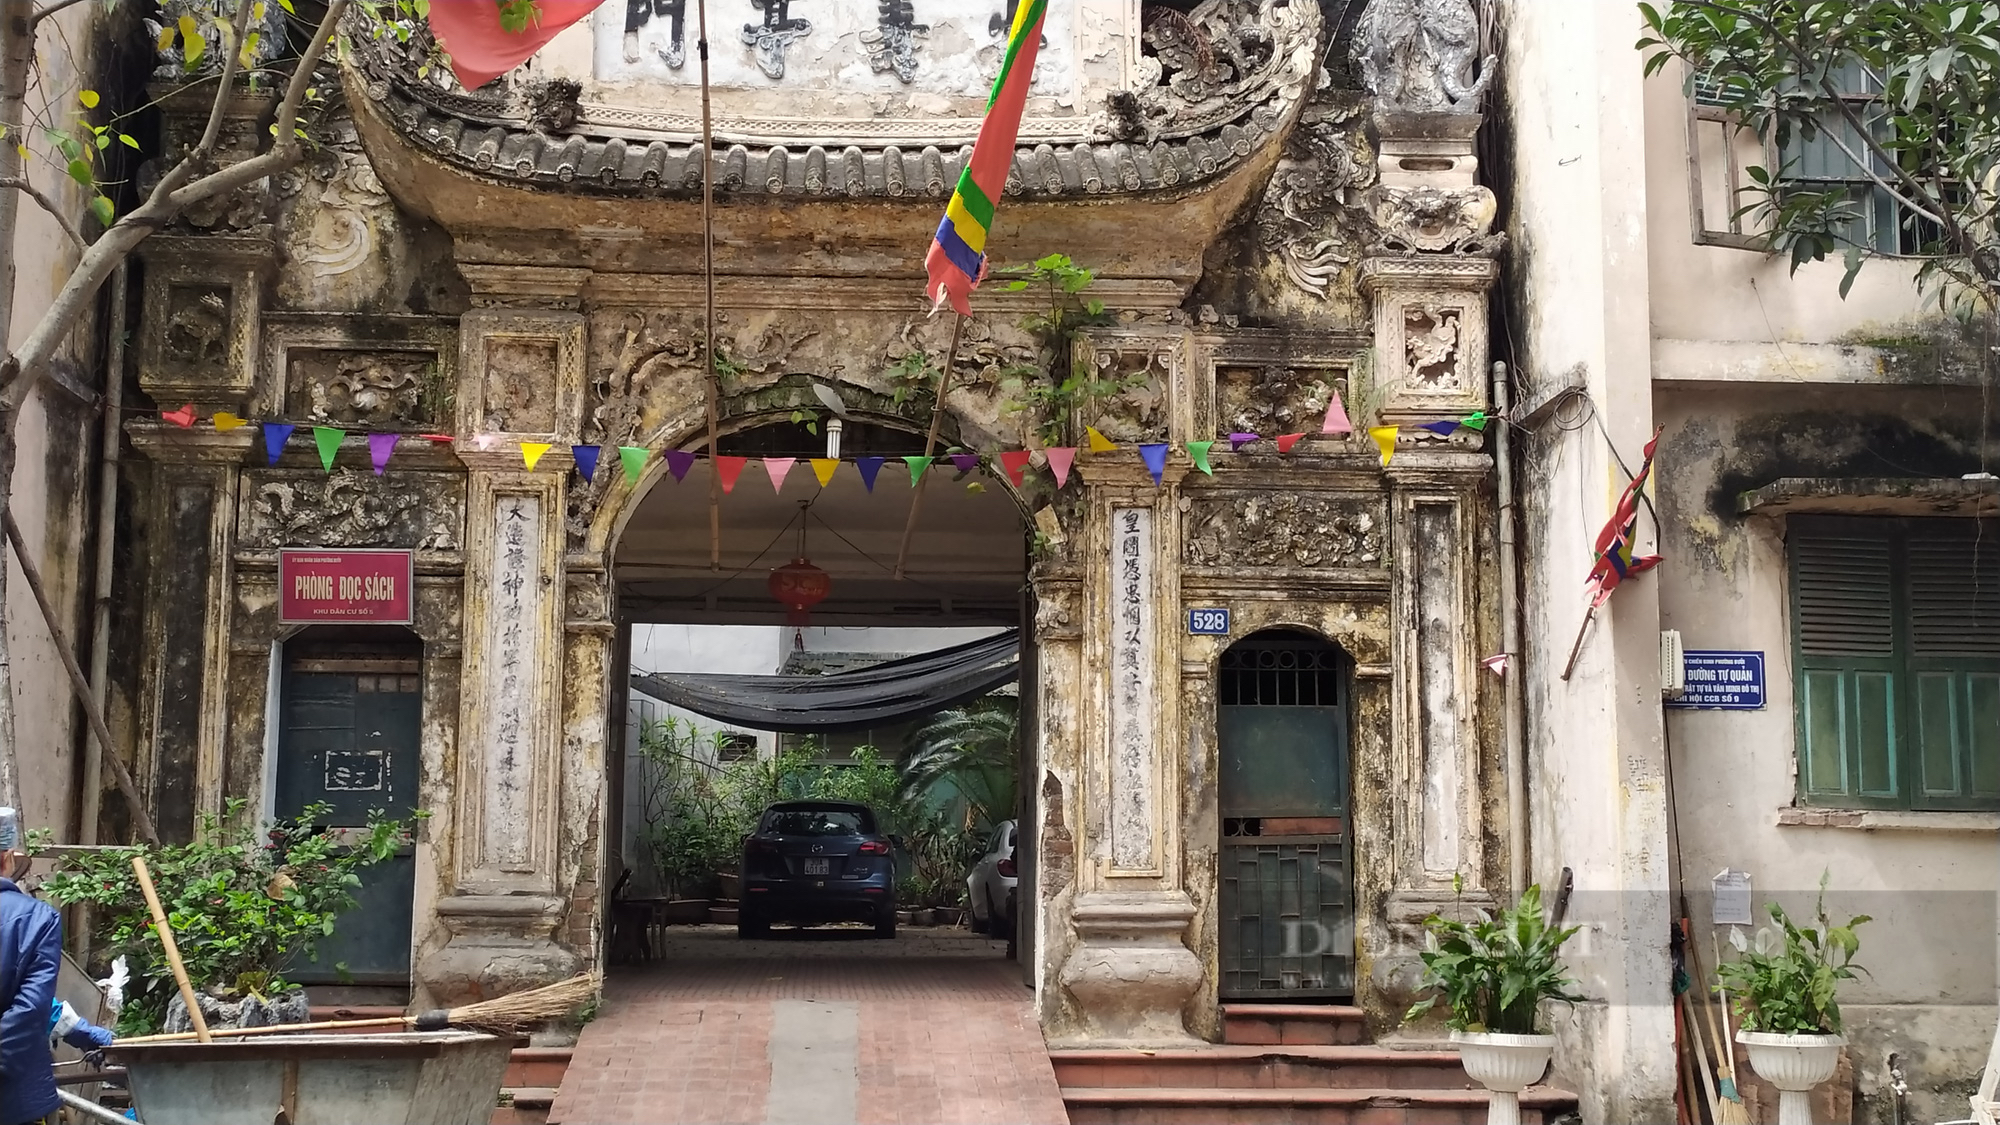 Ký ức Hà Nội: Nhớ bỏng cổng làng phố thị mỗi khi xa Thủ đô - Ảnh 1.